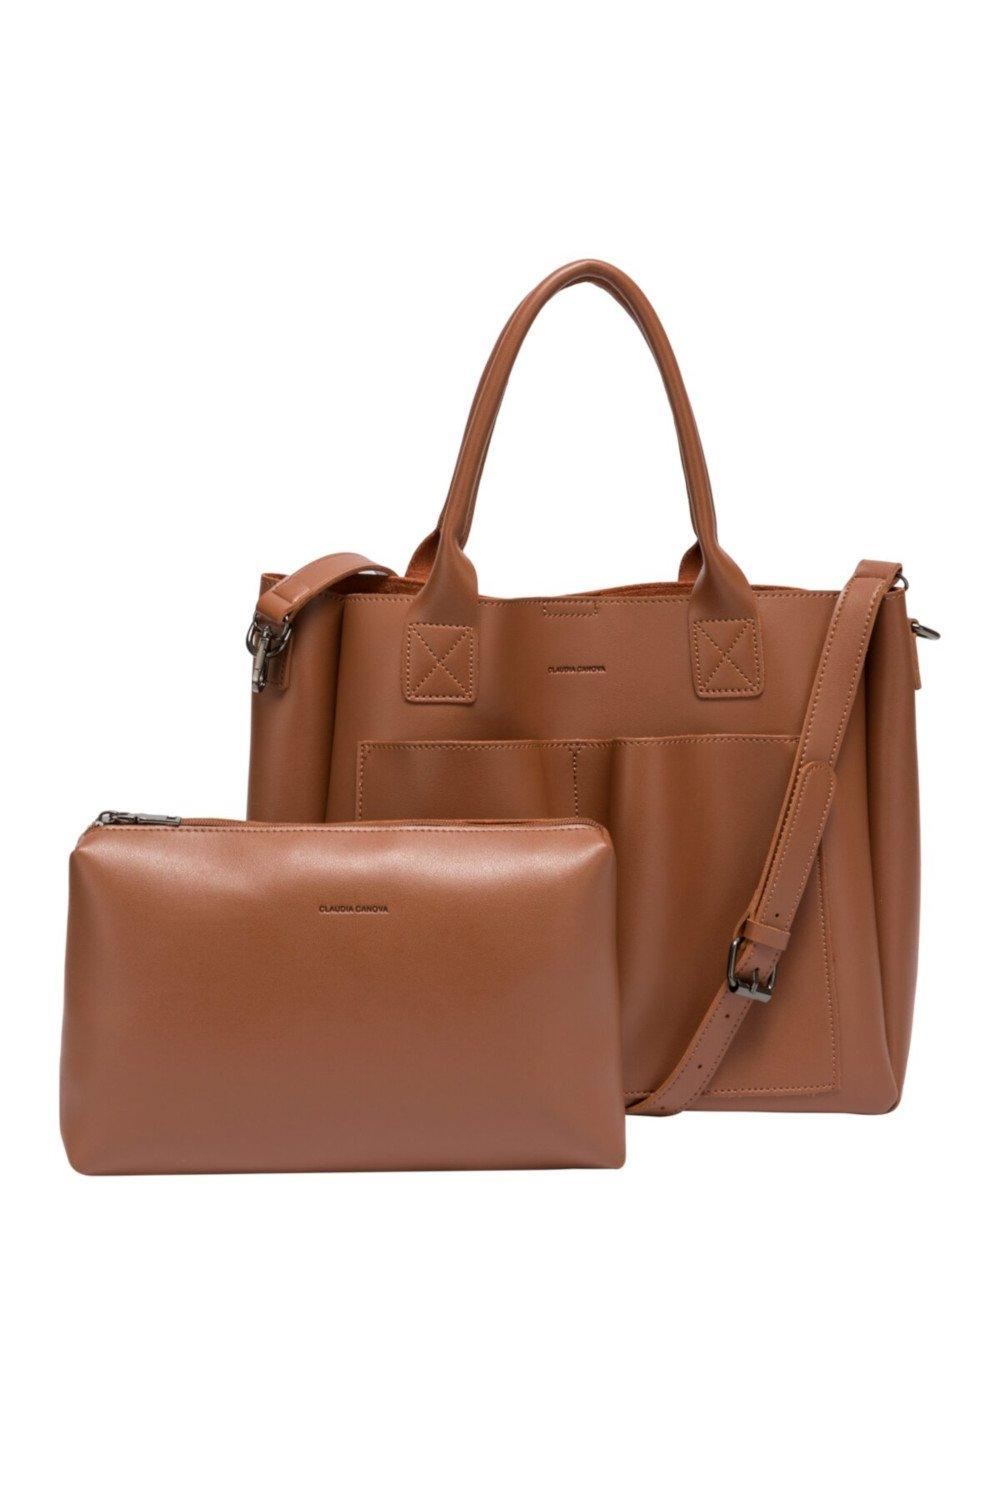 Большая сумка-тоут Megan Xl с передними карманами Claudia Canova, коричневый